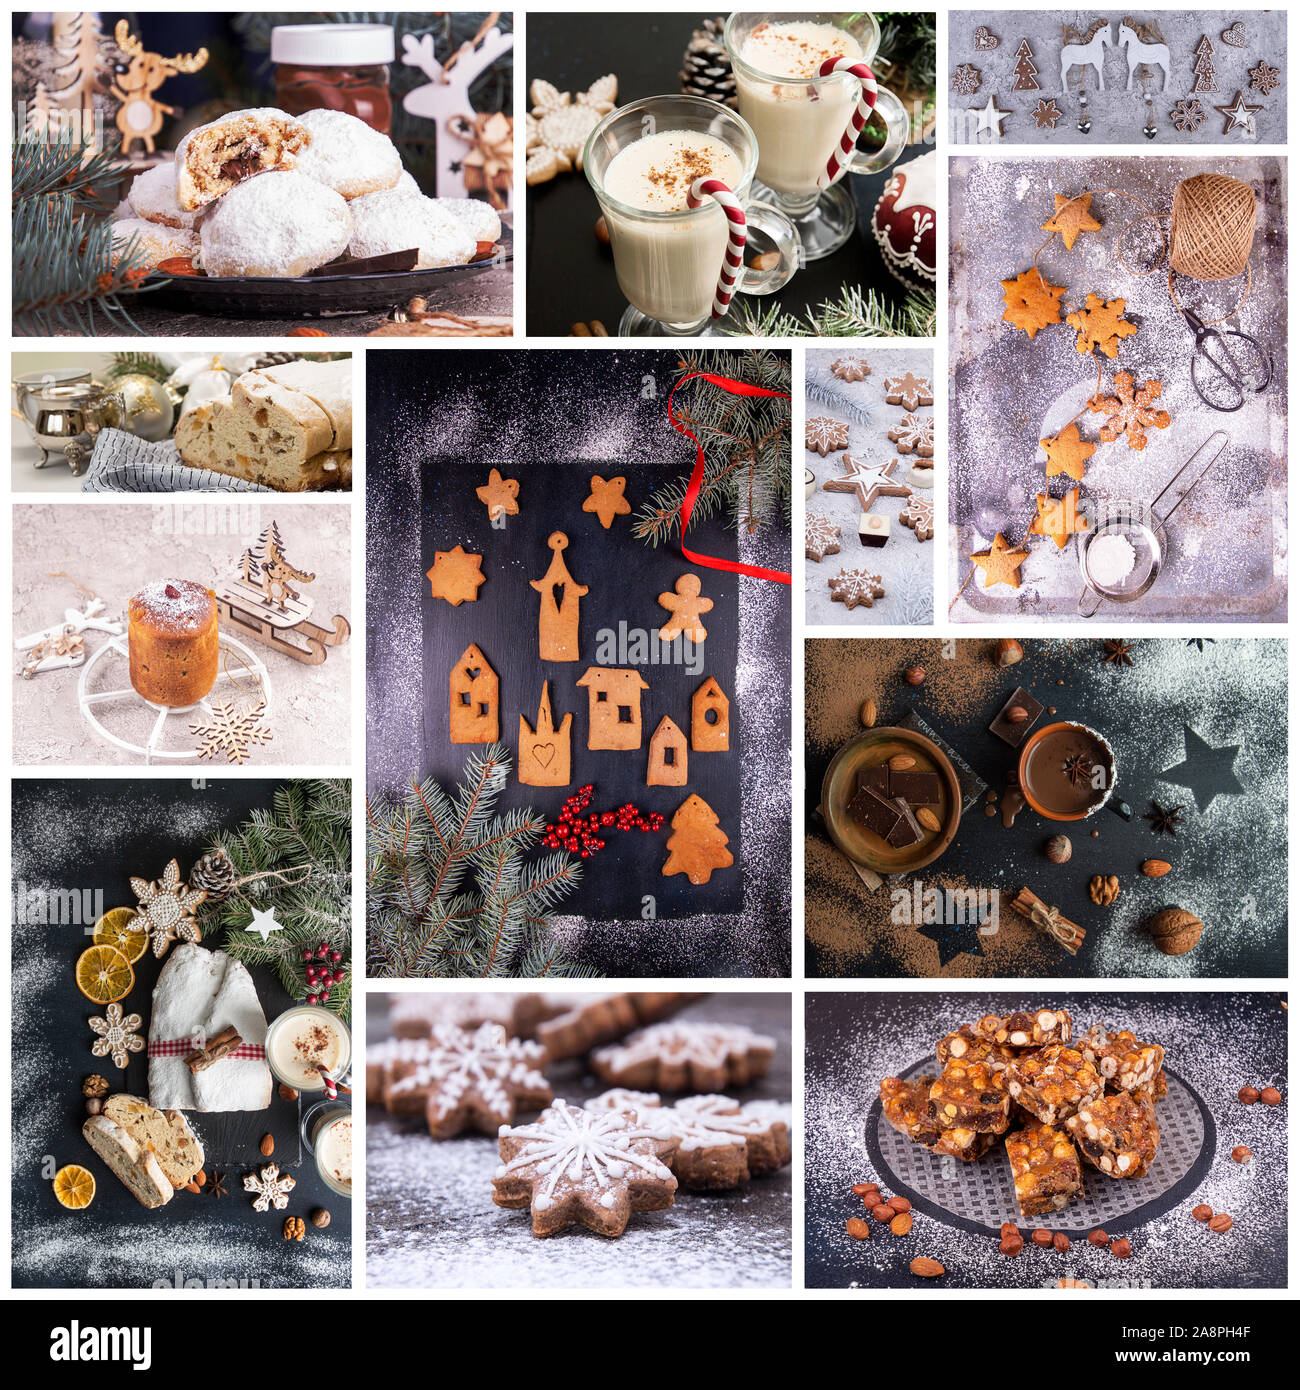 Weihnachten Neujahr süßes Gebäck Desserts. Der traditionelle Weihnachten Süßigkeiten. Collage aus schönen festlichen Bilder. Stockfoto